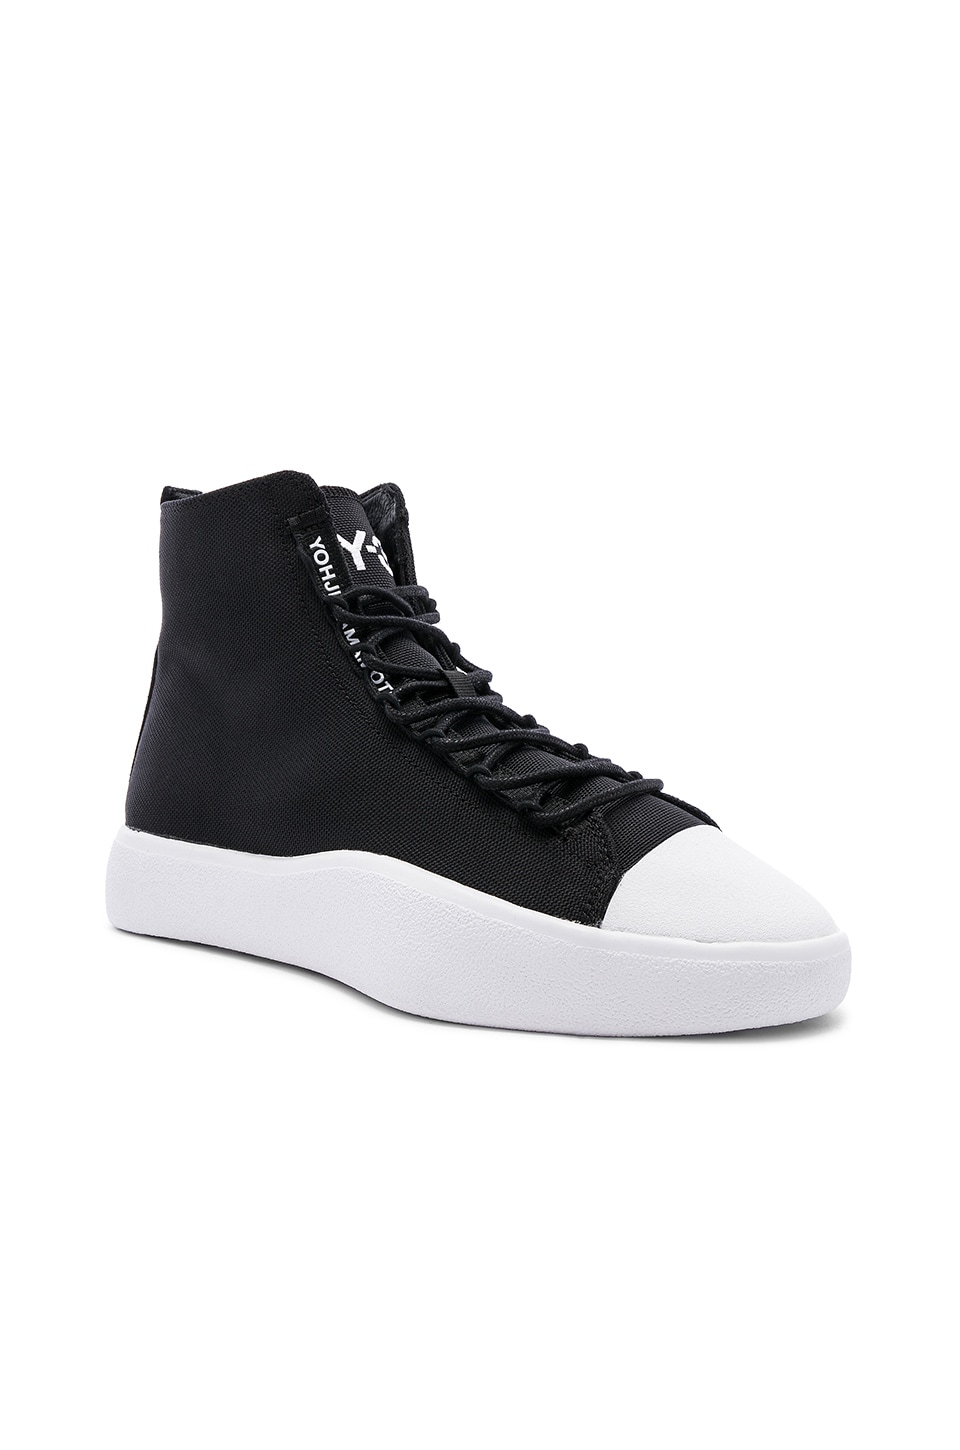 y3 black sneakers